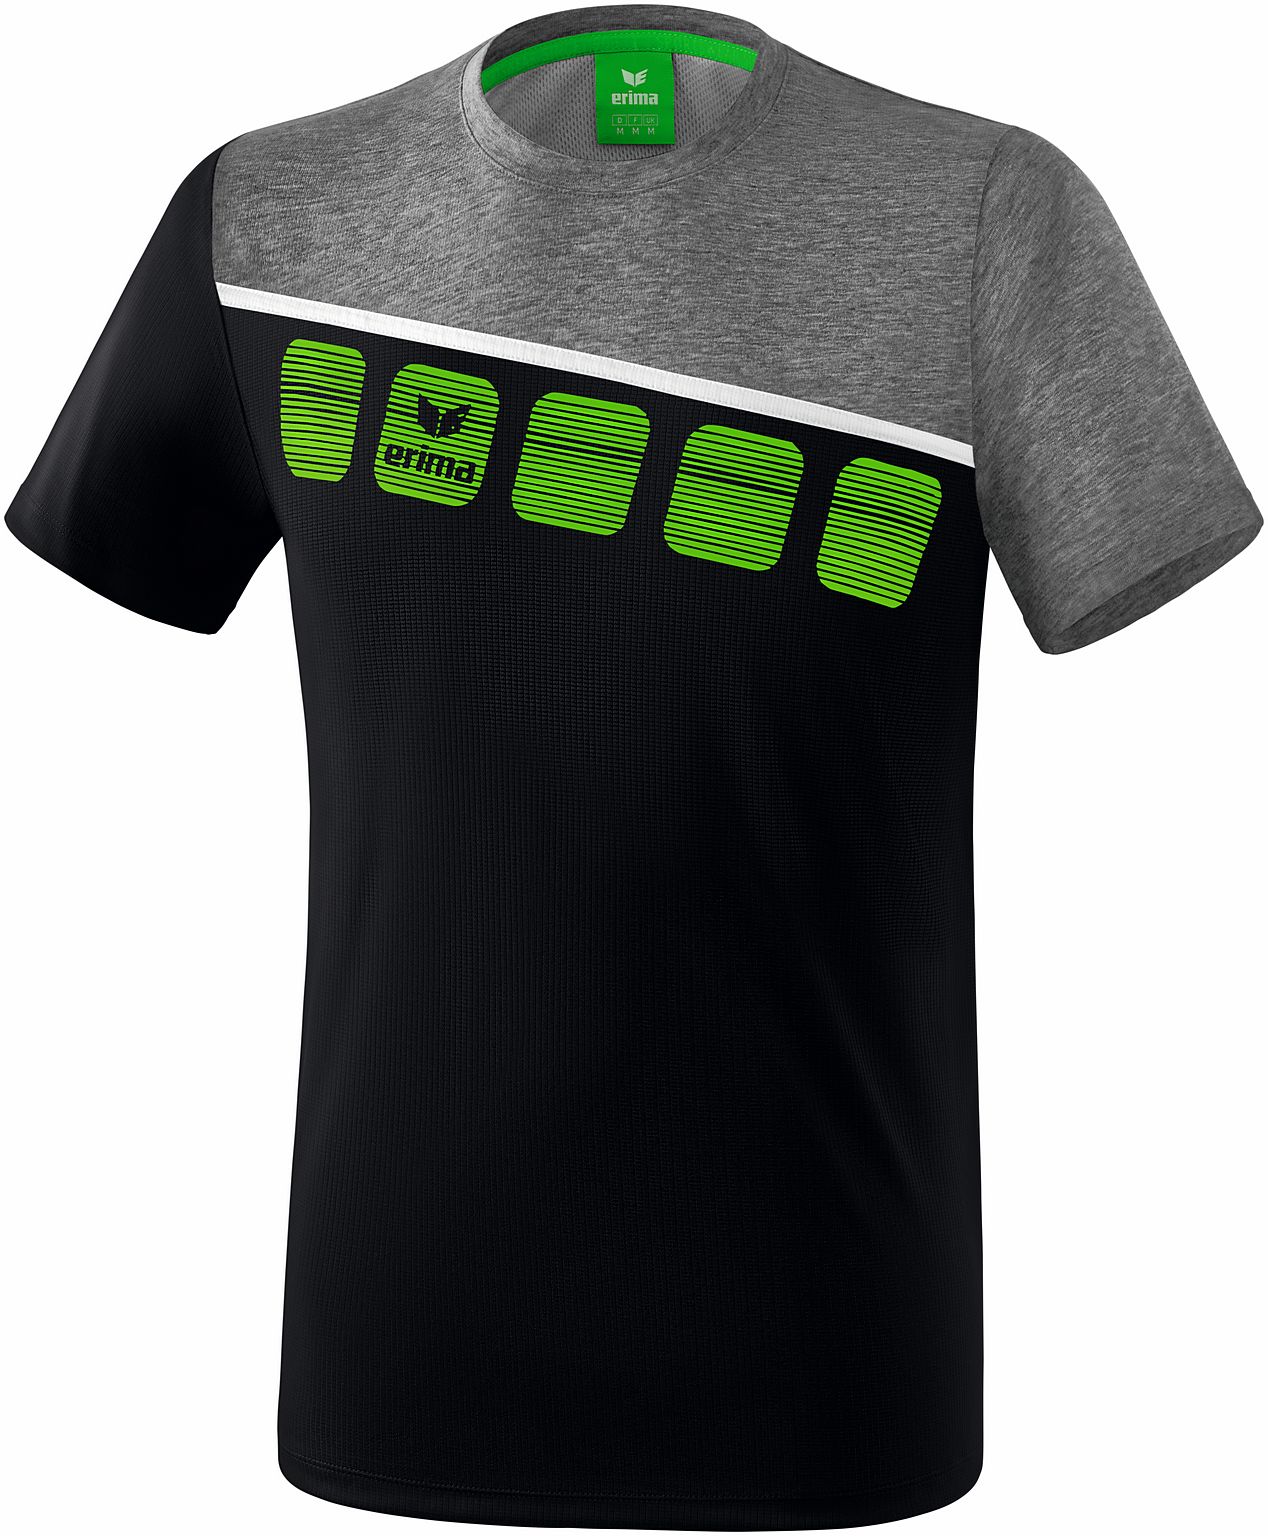 Teamline 5-C T-shirt